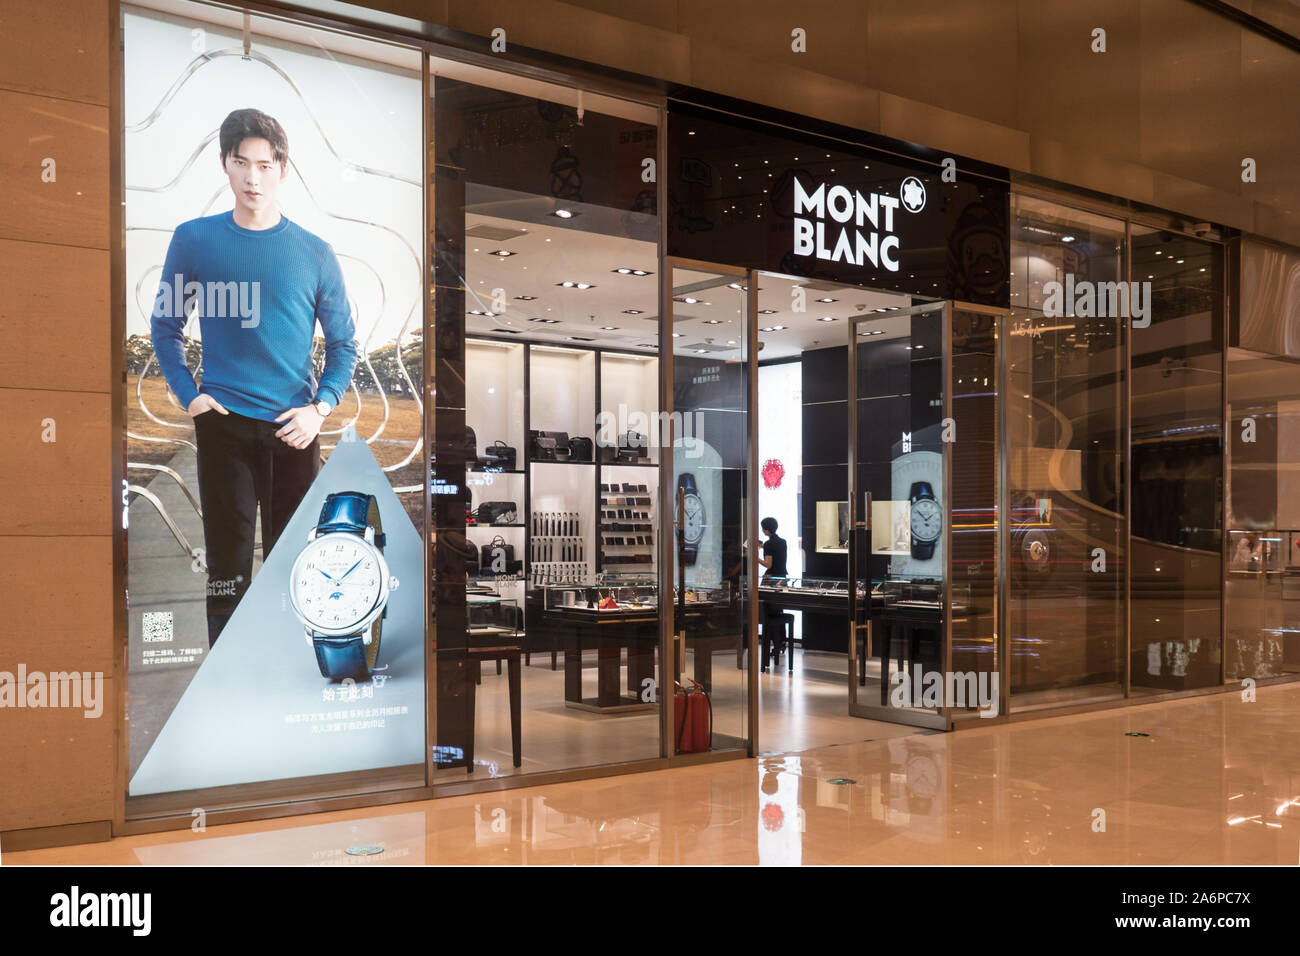 MONT BLANC in China: Shop Fassade während eines speziellen Verkauf, diese Marke macht Luxus Schreibgeräte und Produkte aus Leder, China, 17. Juni 2019 China, 17. Juni 2019 Stockfoto